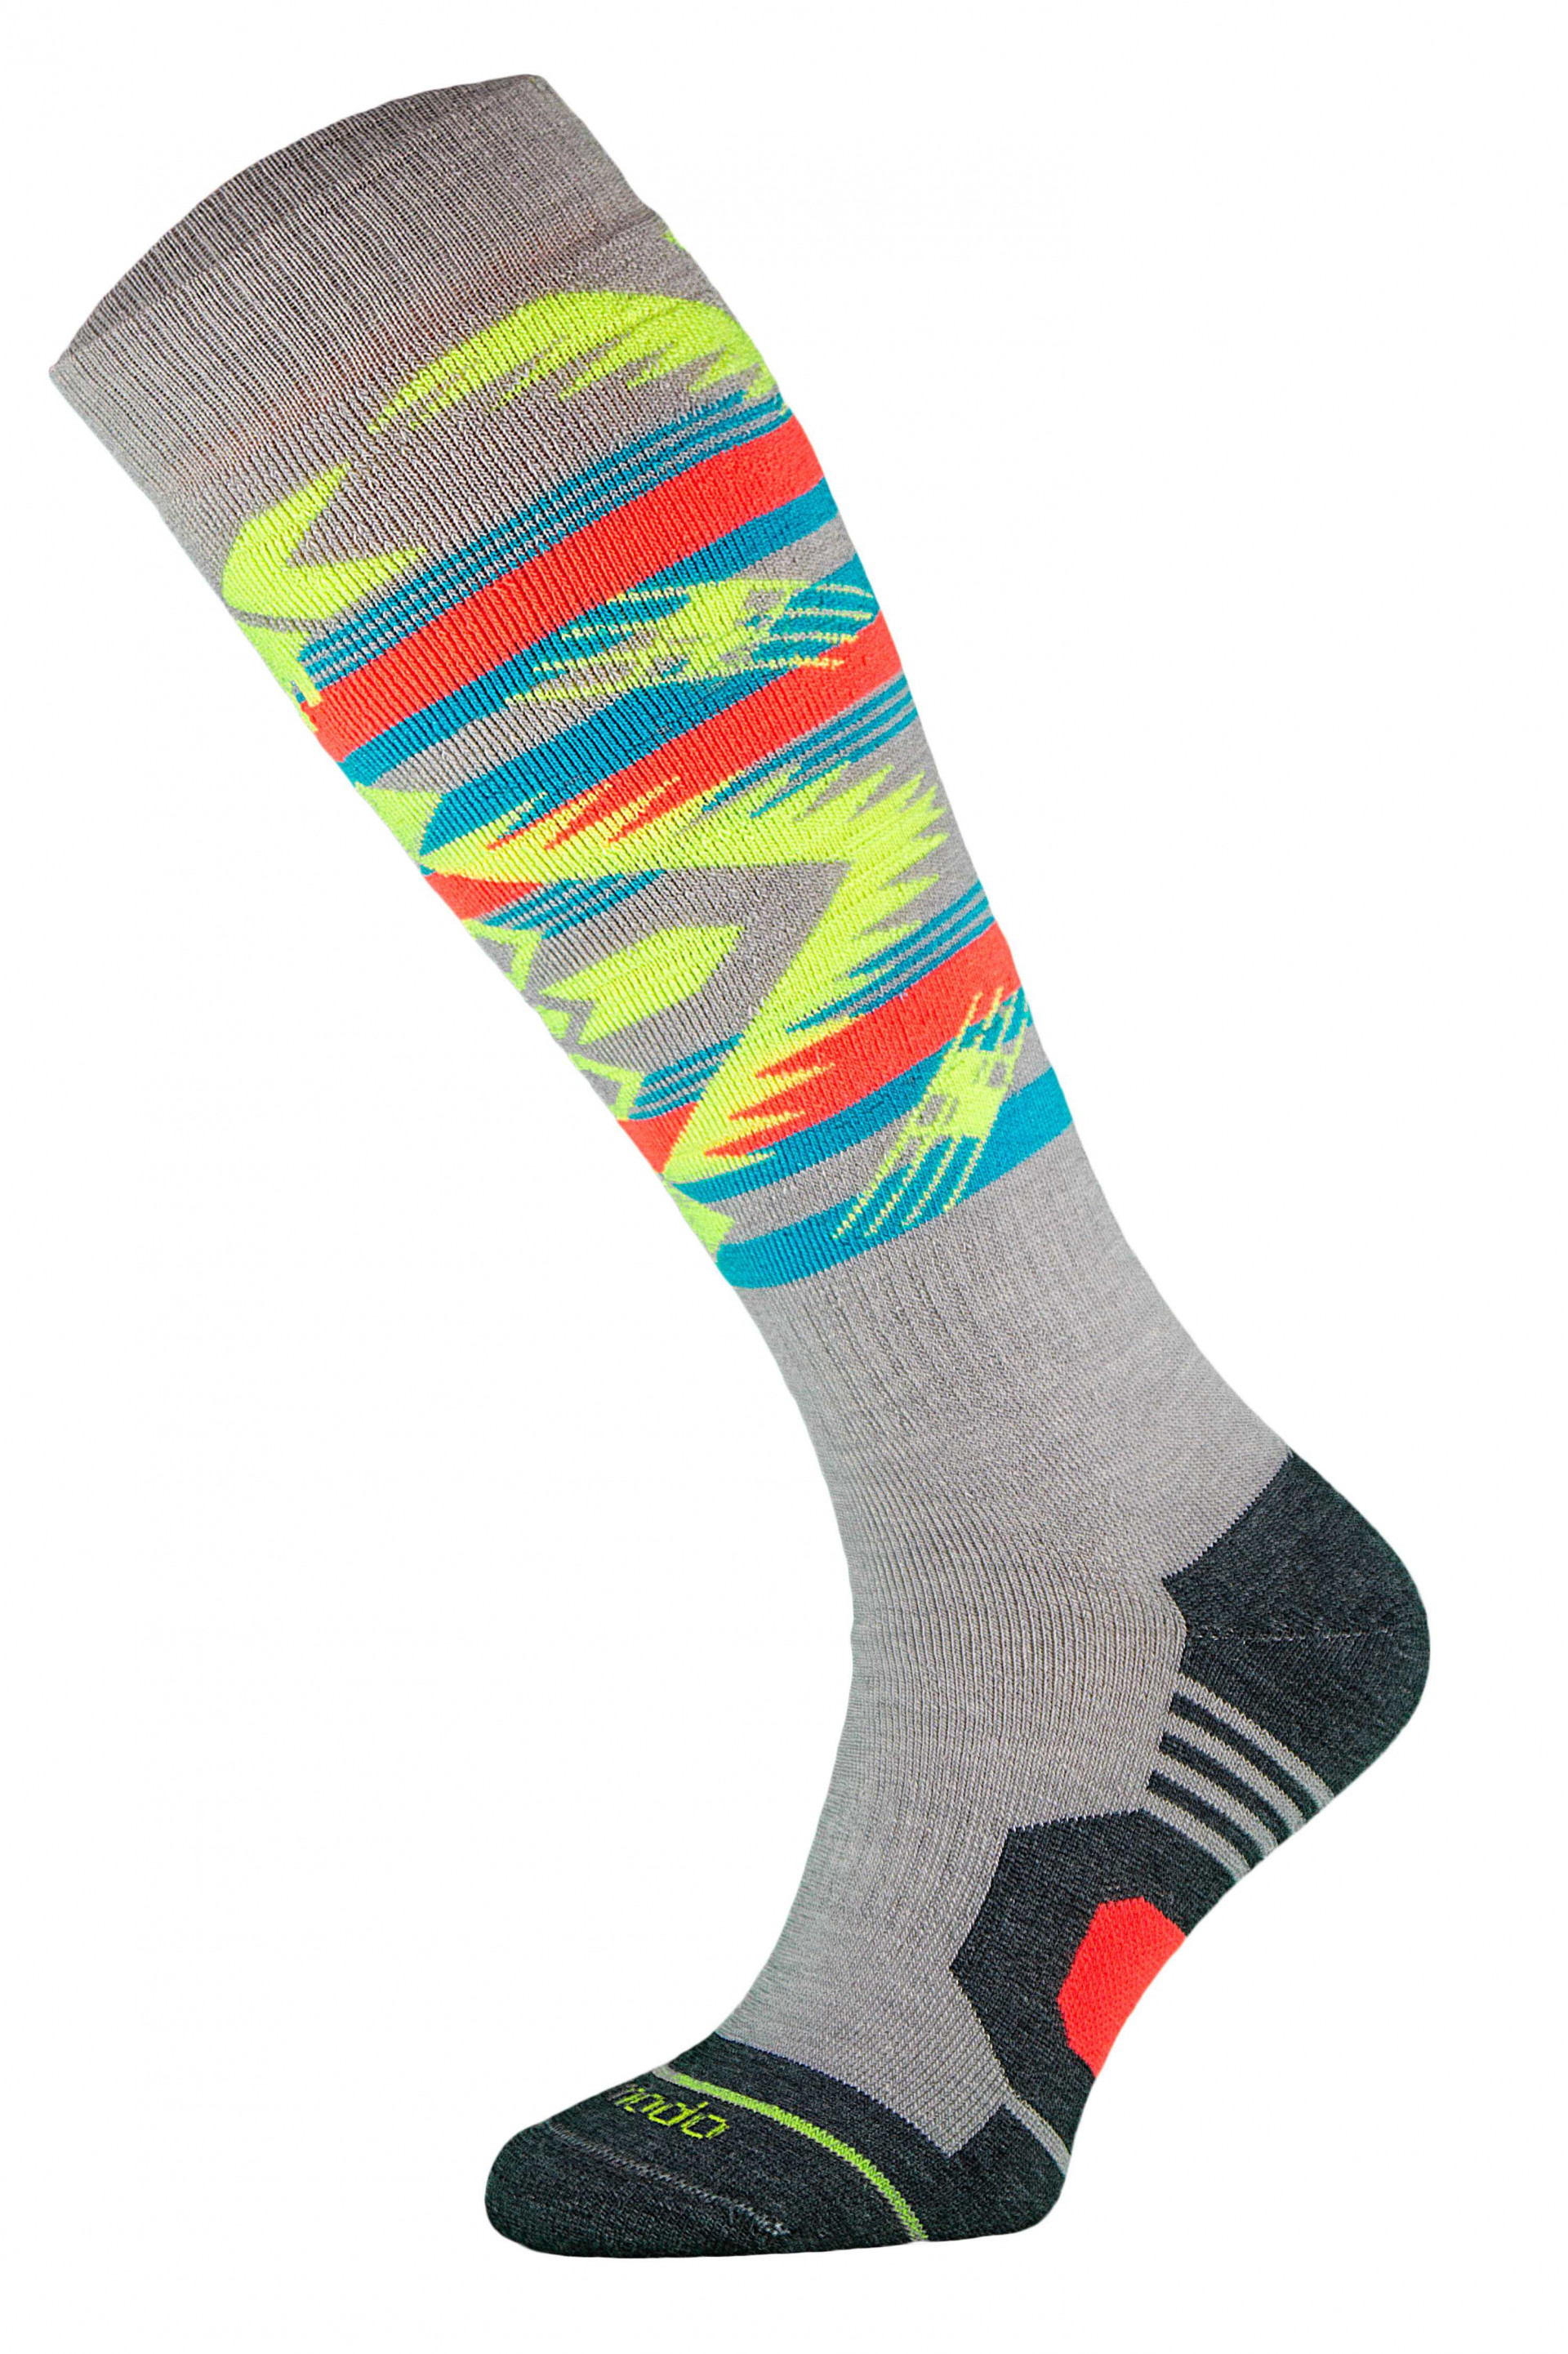 Chaussettes chaudes idéales pour les sports d'hiver par Comodo Socks (Plusieurs coloris)